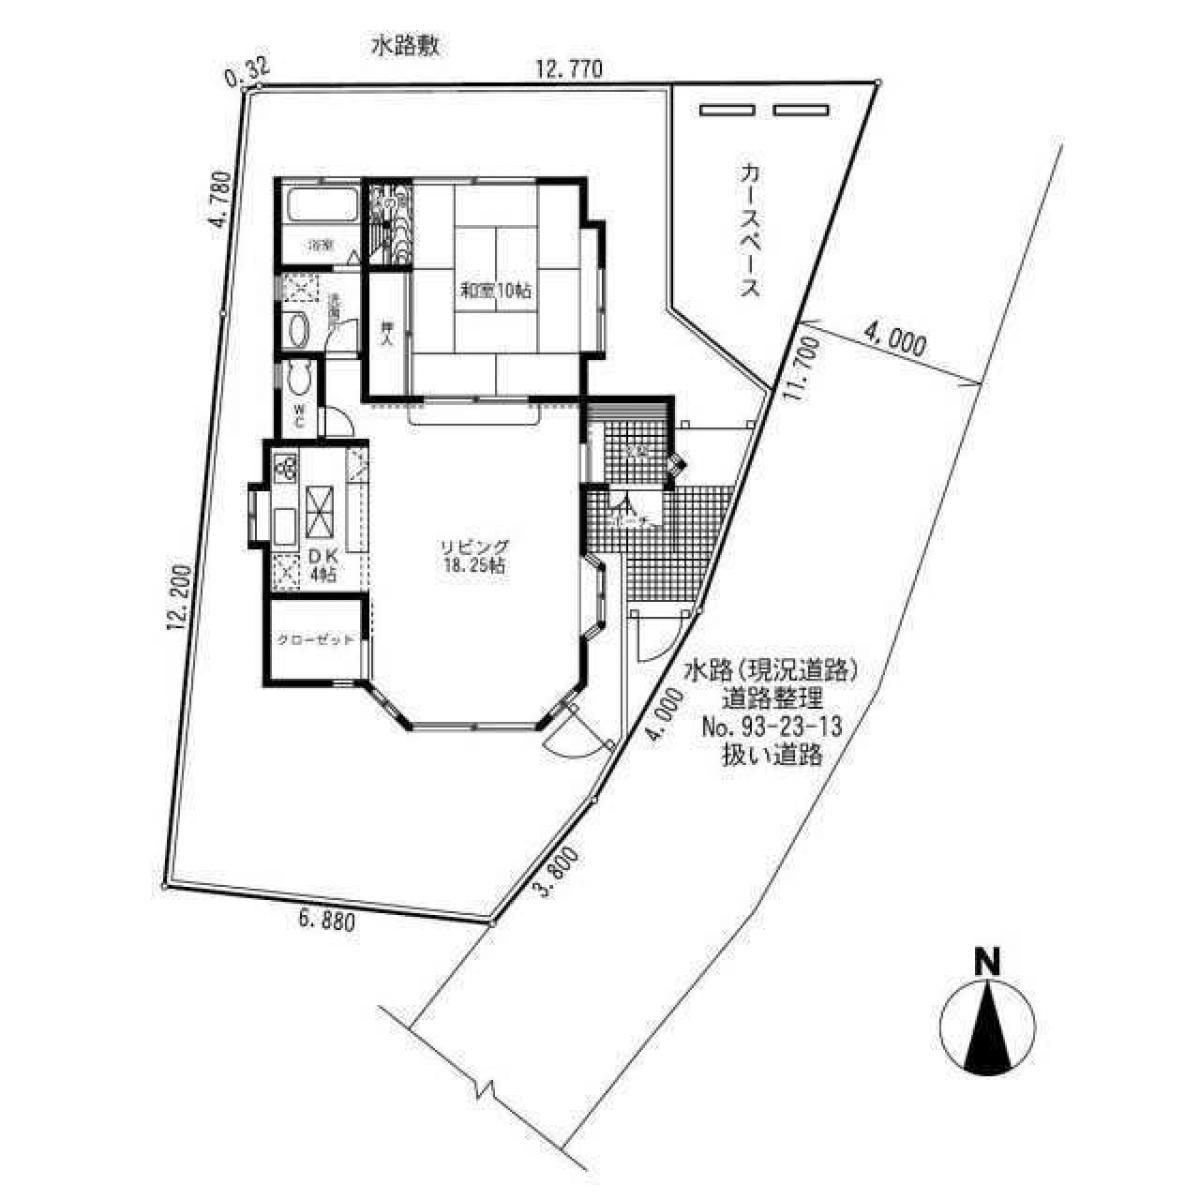 Picture of Home For Sale in Saitama Shi Nishi Ku, Saitama, Japan